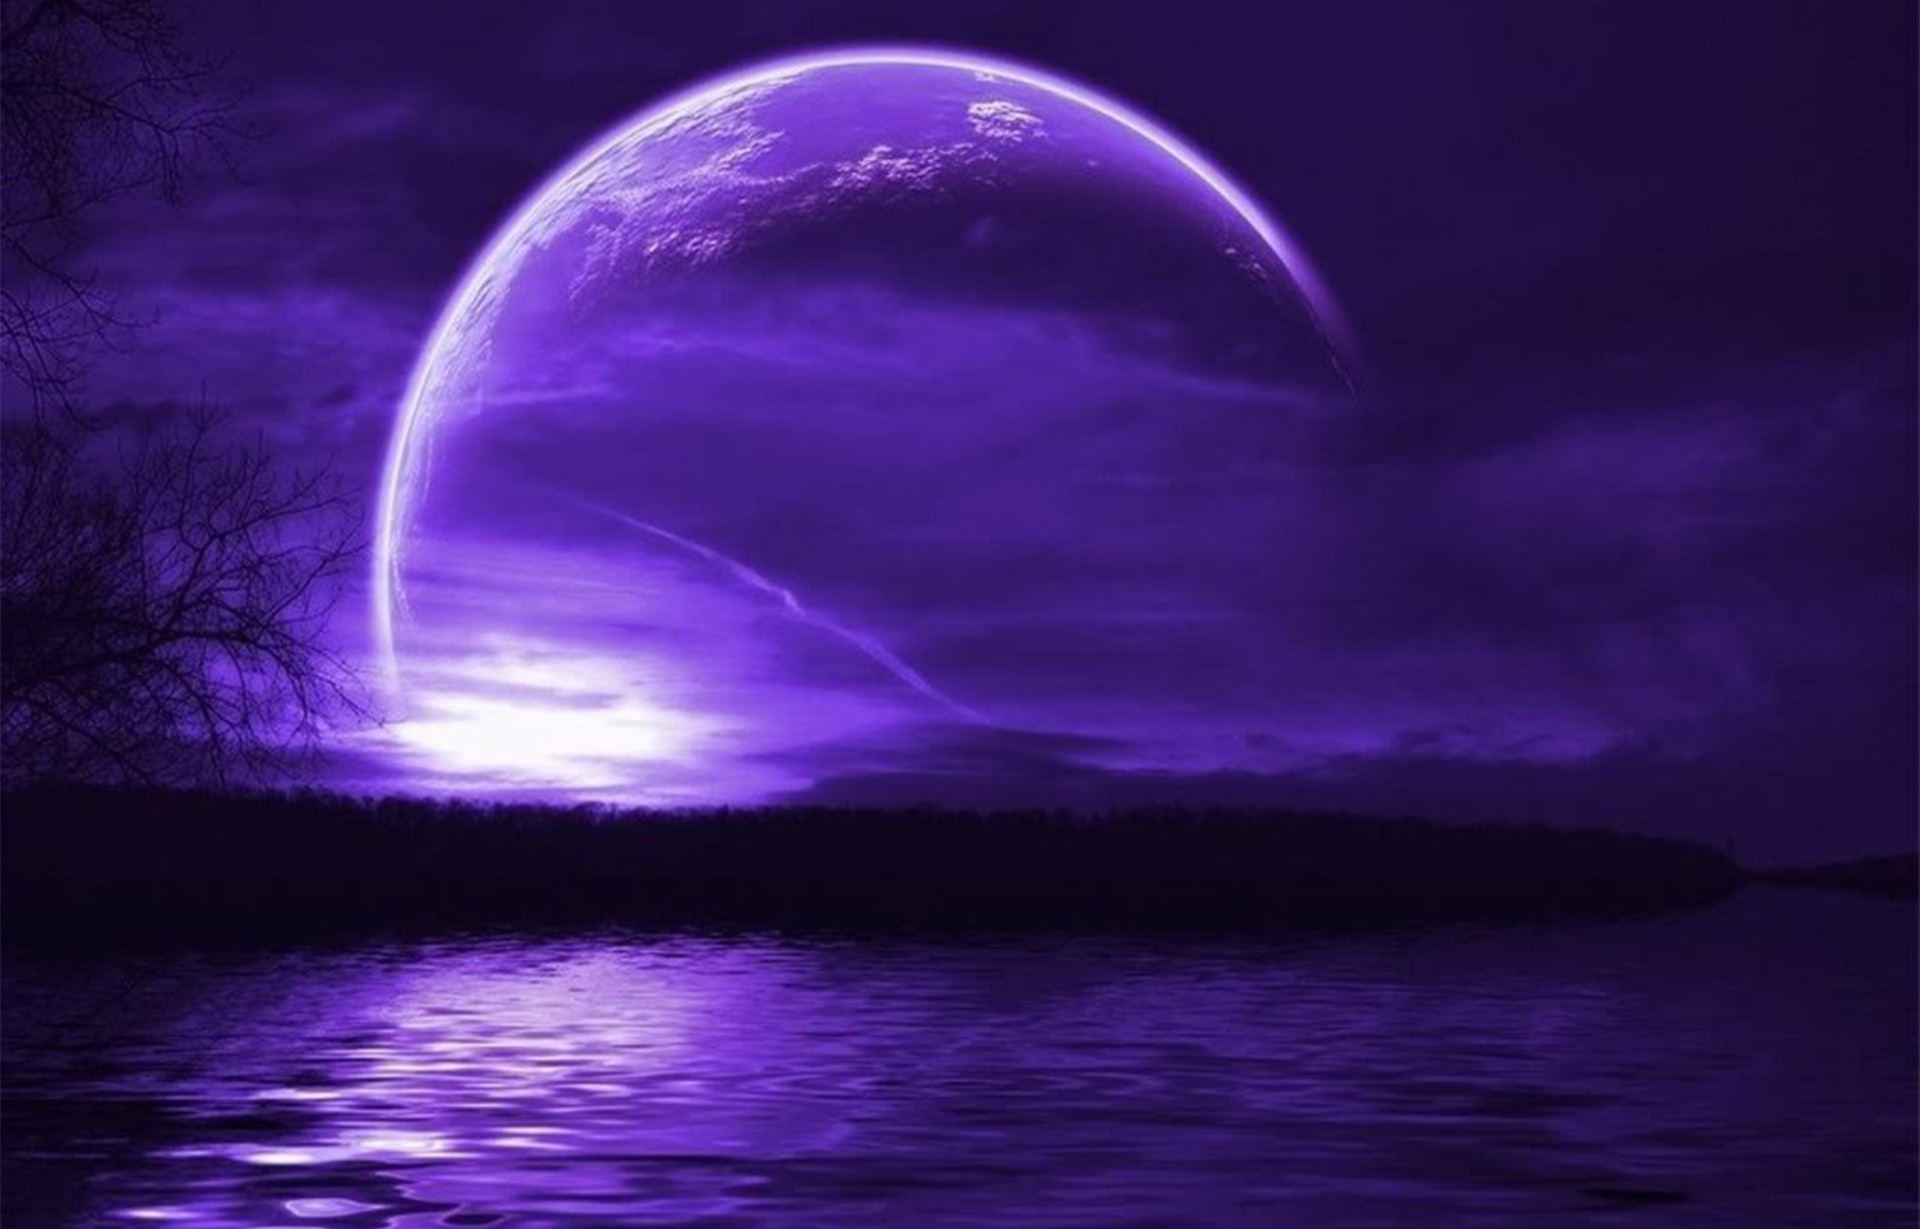 moon wallpaper download,moon,nature,purple,moonlight,sky